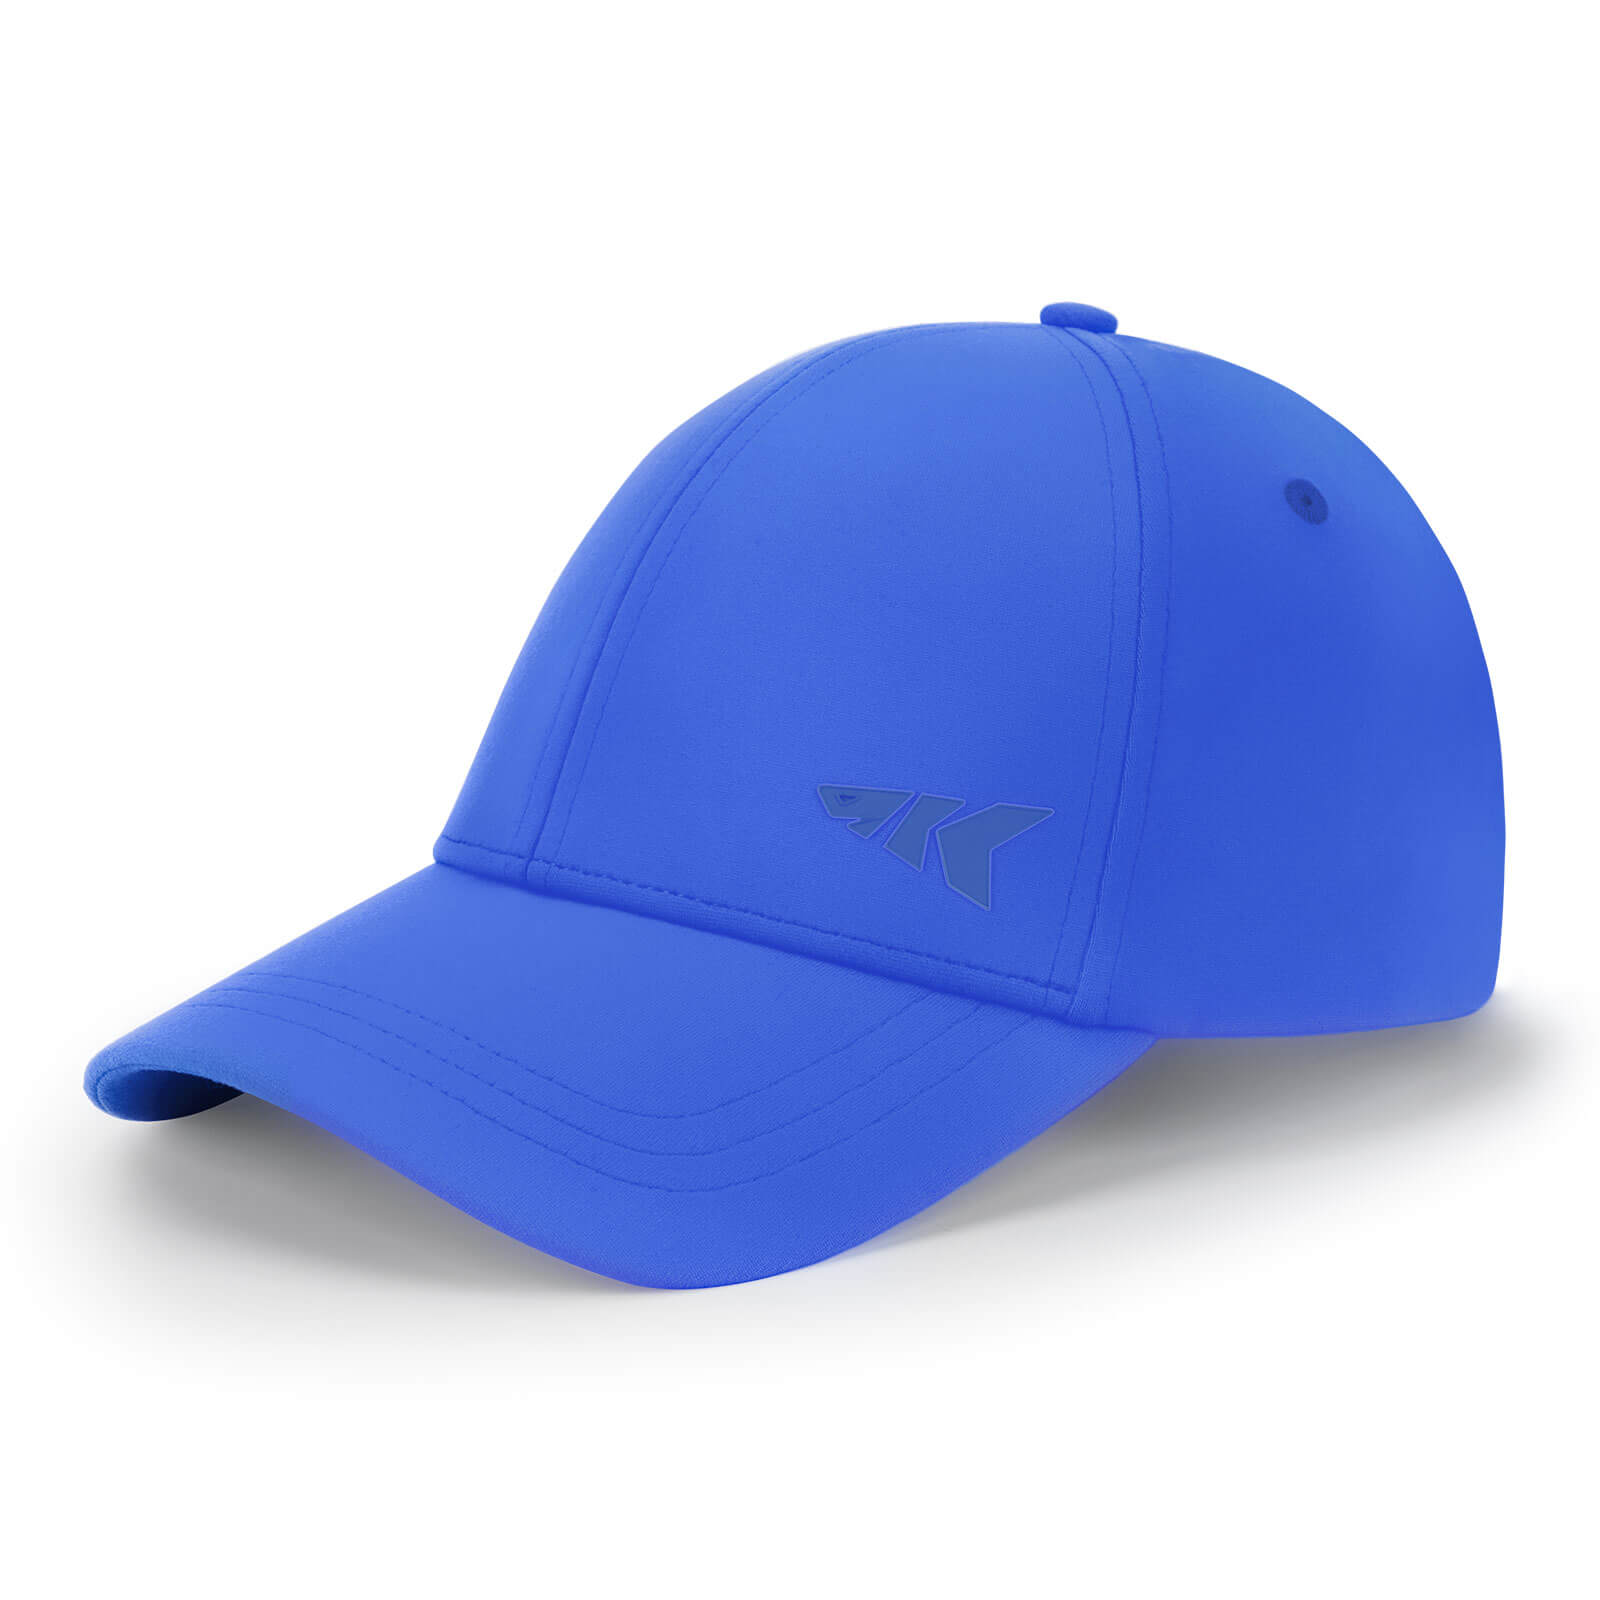 KastKing Official Caps - Adjustable / Royal Blue